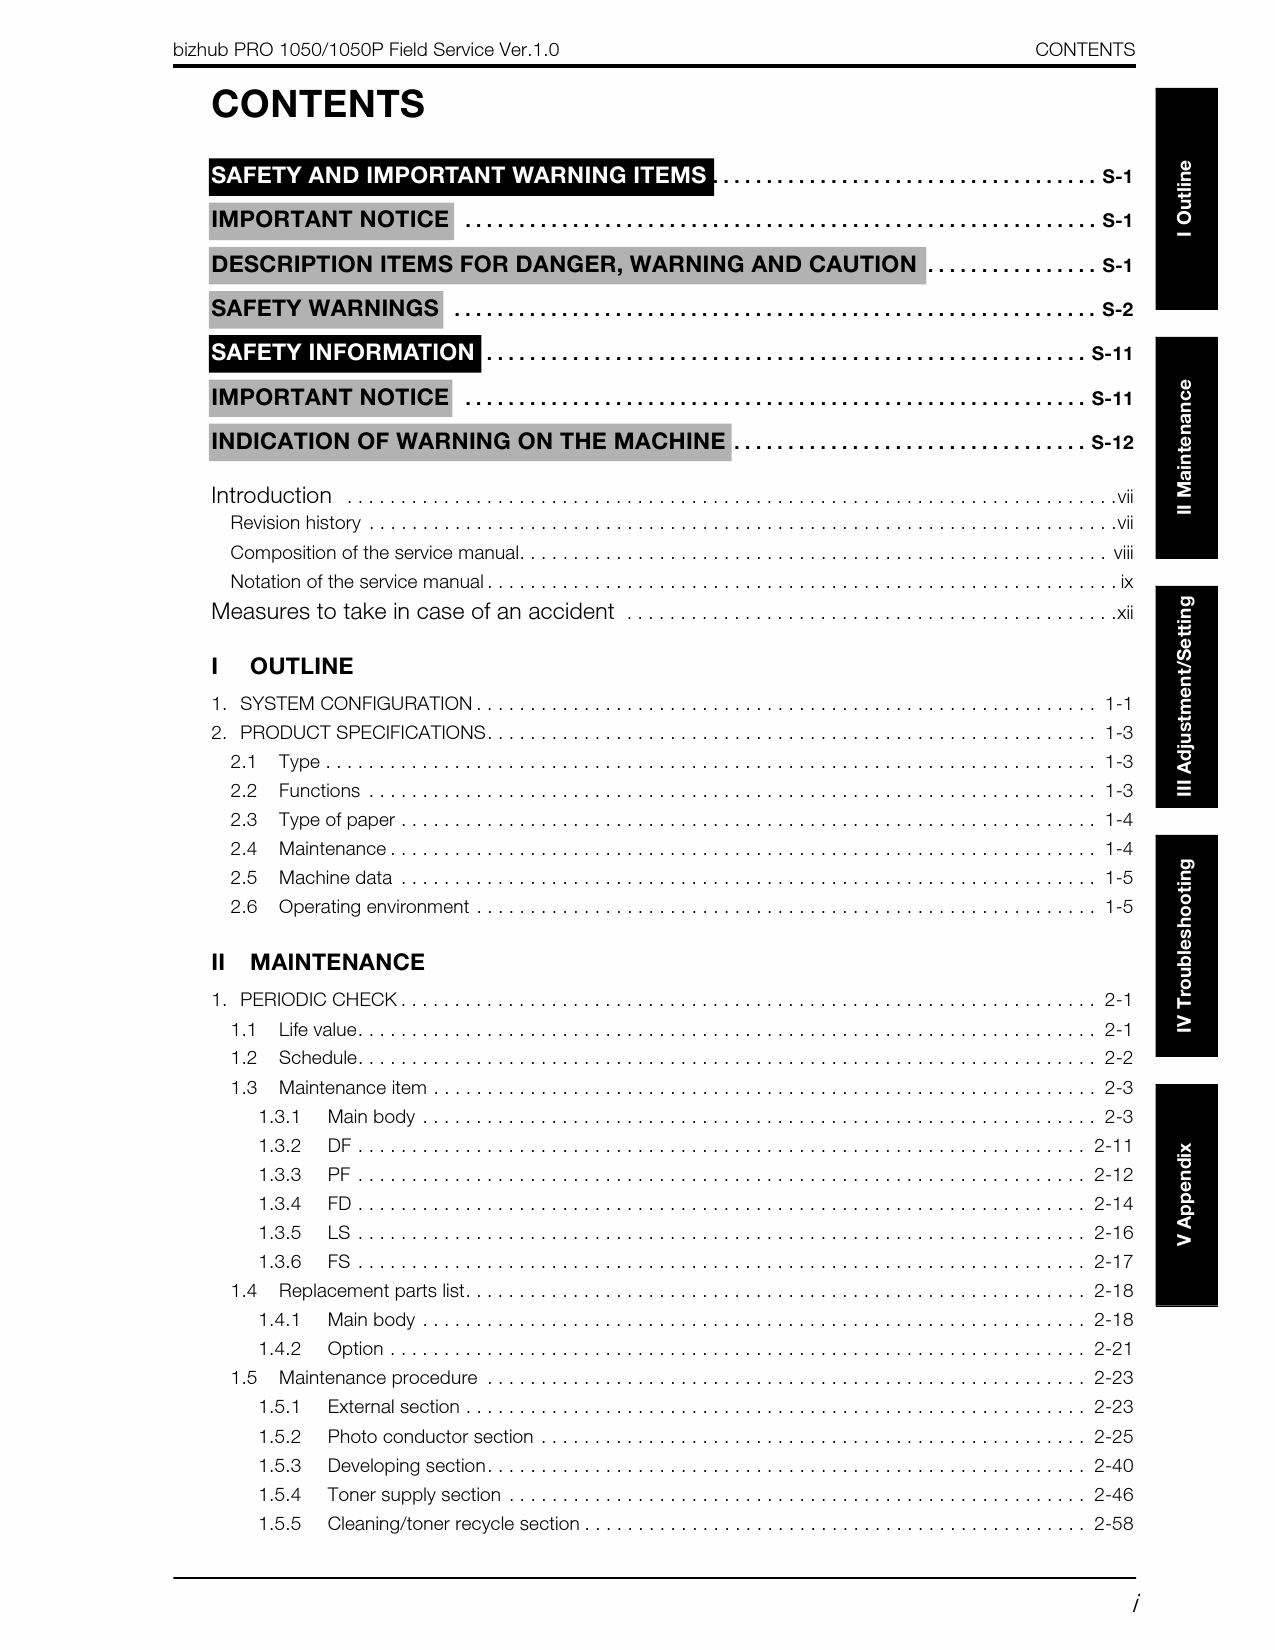 Konica-Minolta bizhub-PRO 1050 1050P FIELD-SERVICE Service Manual-2